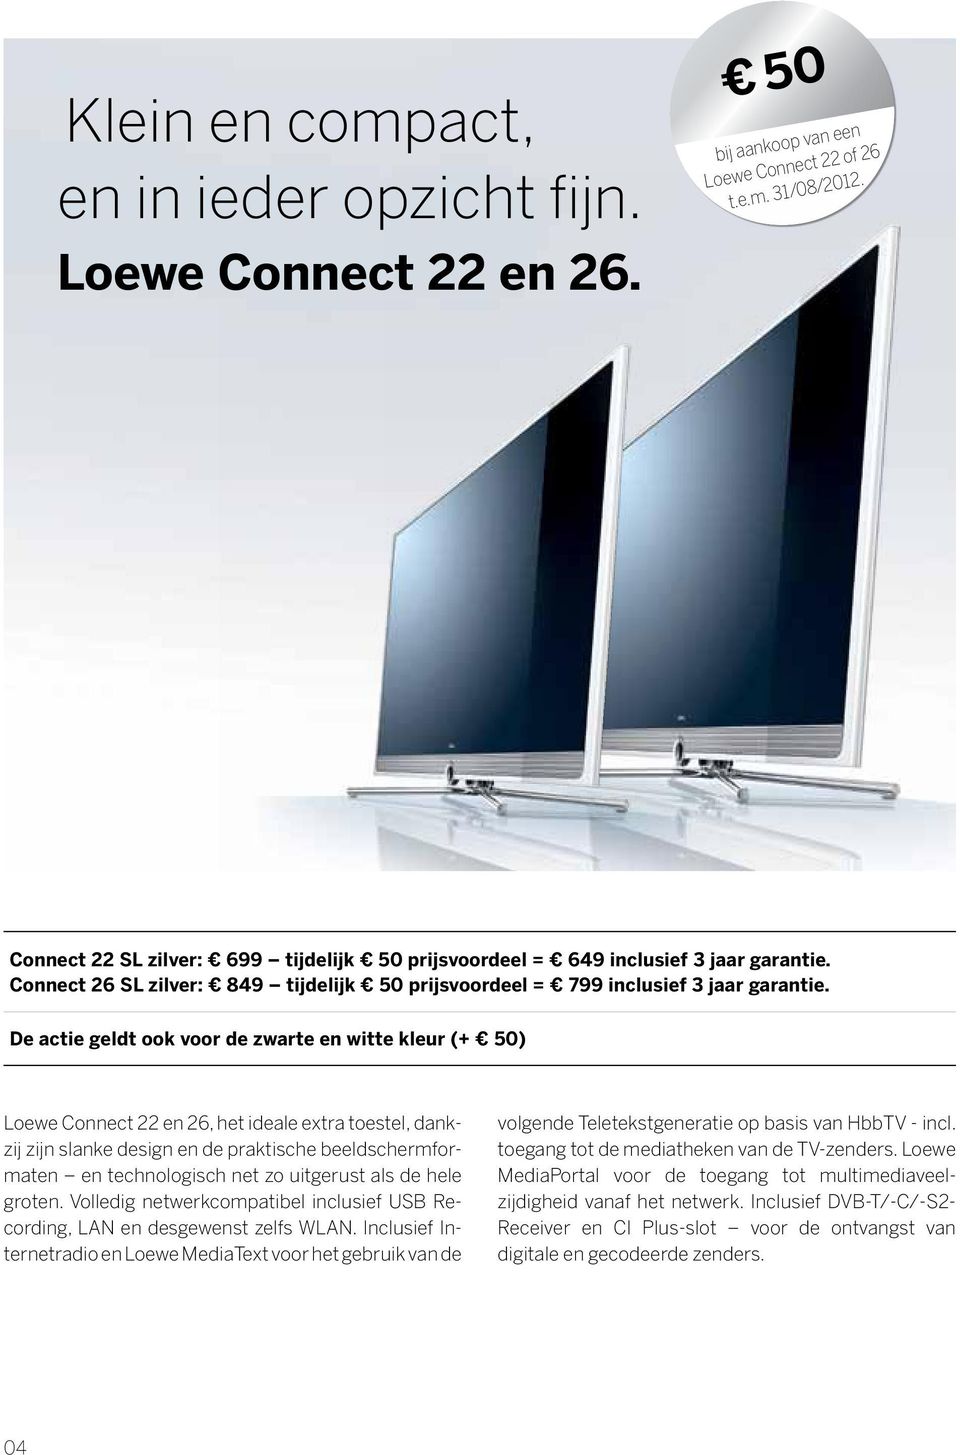 De actie geldt ook voor de zwarte en witte kleur (+ 50) Loewe Connect 22 en 26, het ideale extra toestel, dankzij zijn slanke design en de praktische beeldschermformaten en technologisch net zo